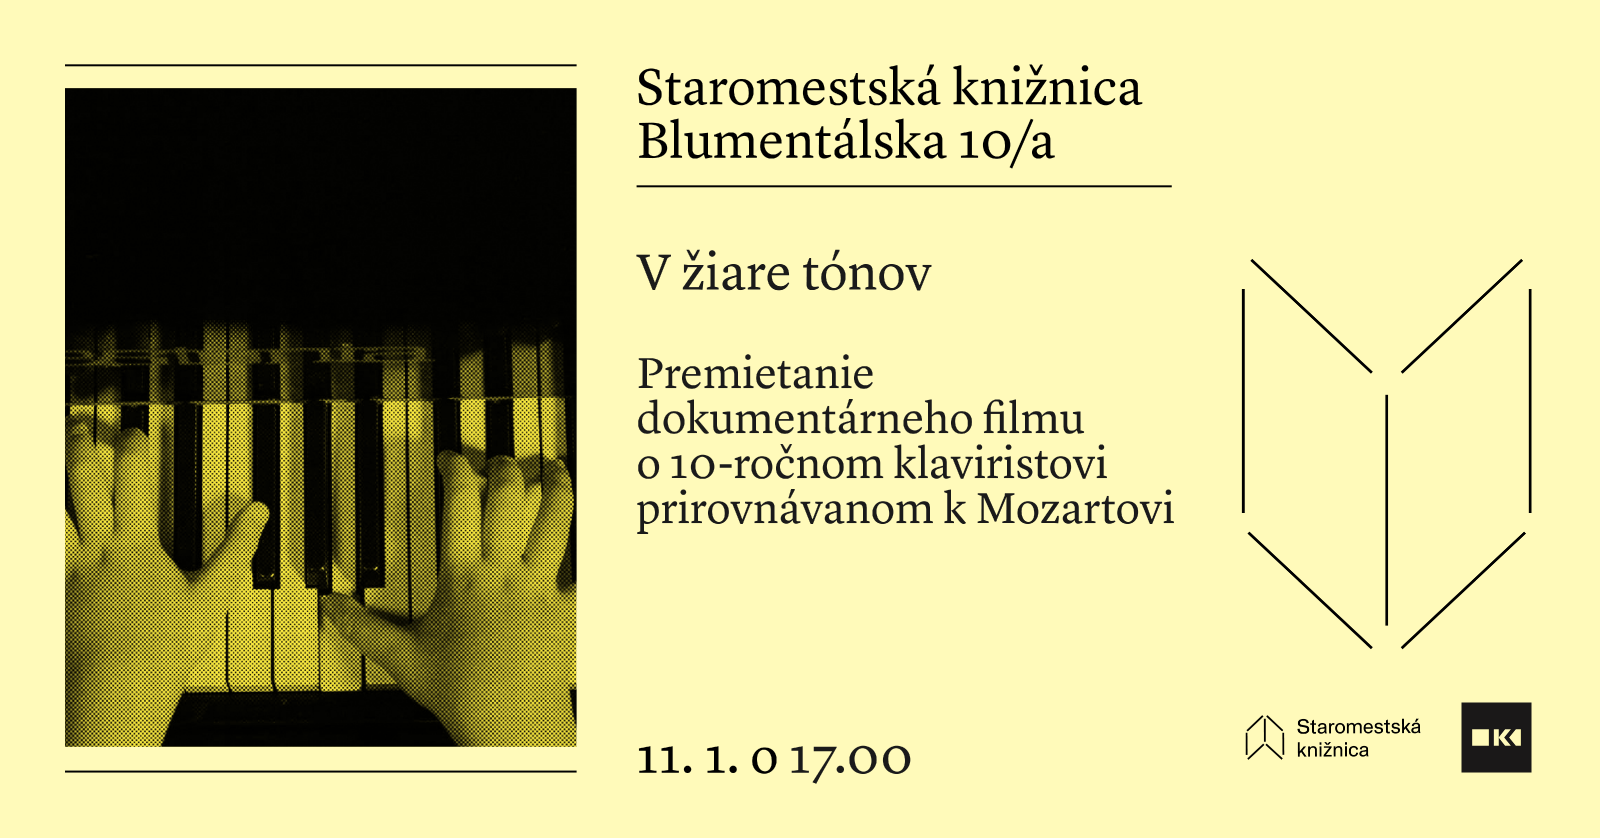 Premietanie dokumentárneho filmu V žiare tónov - 11. 1. o 17.00 v Staromestskej knižnici